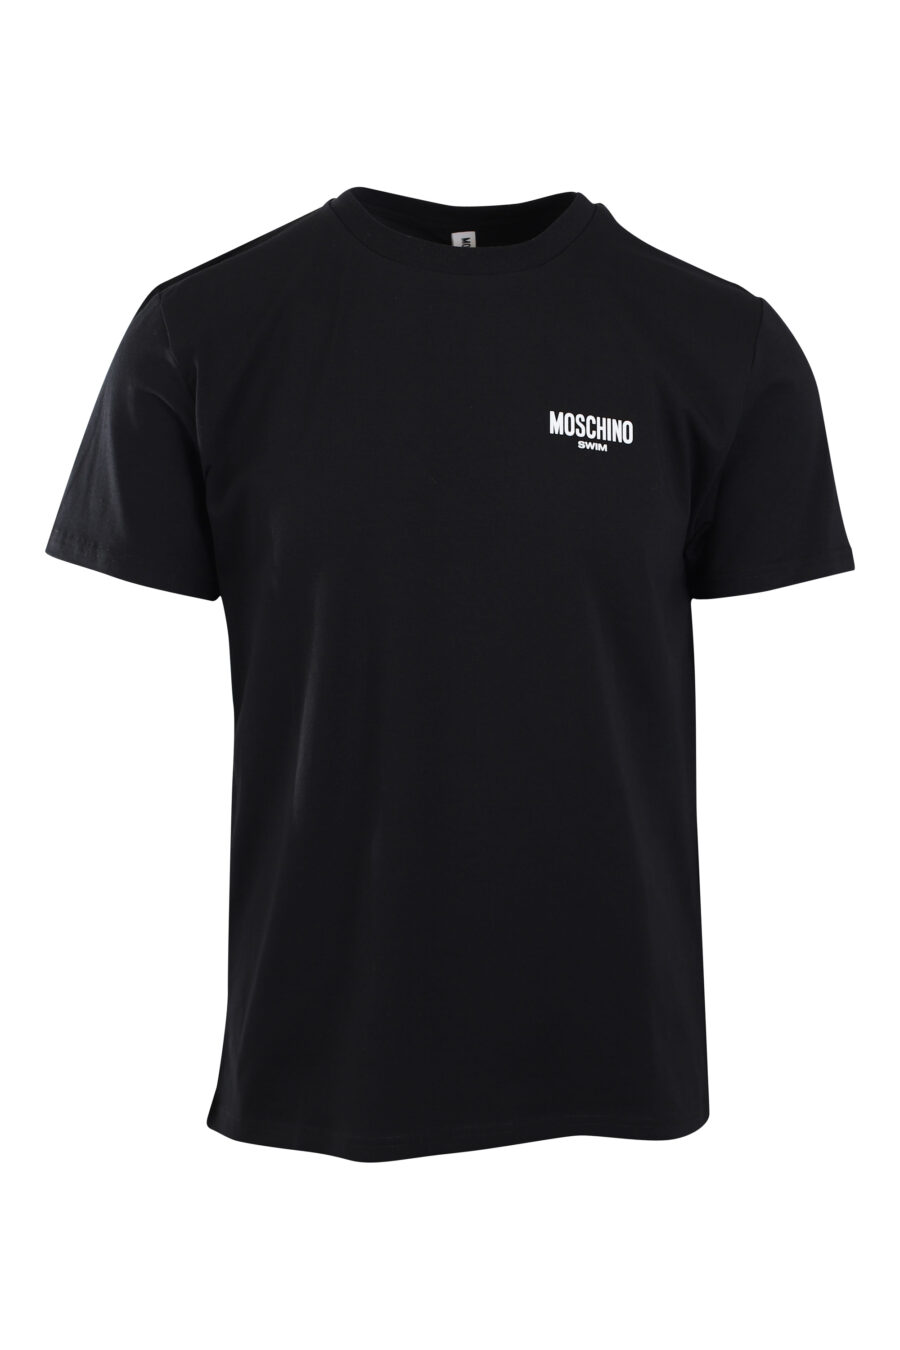 Schwarzes T-Shirt mit Mini-Logo "swim" - IMG 2188